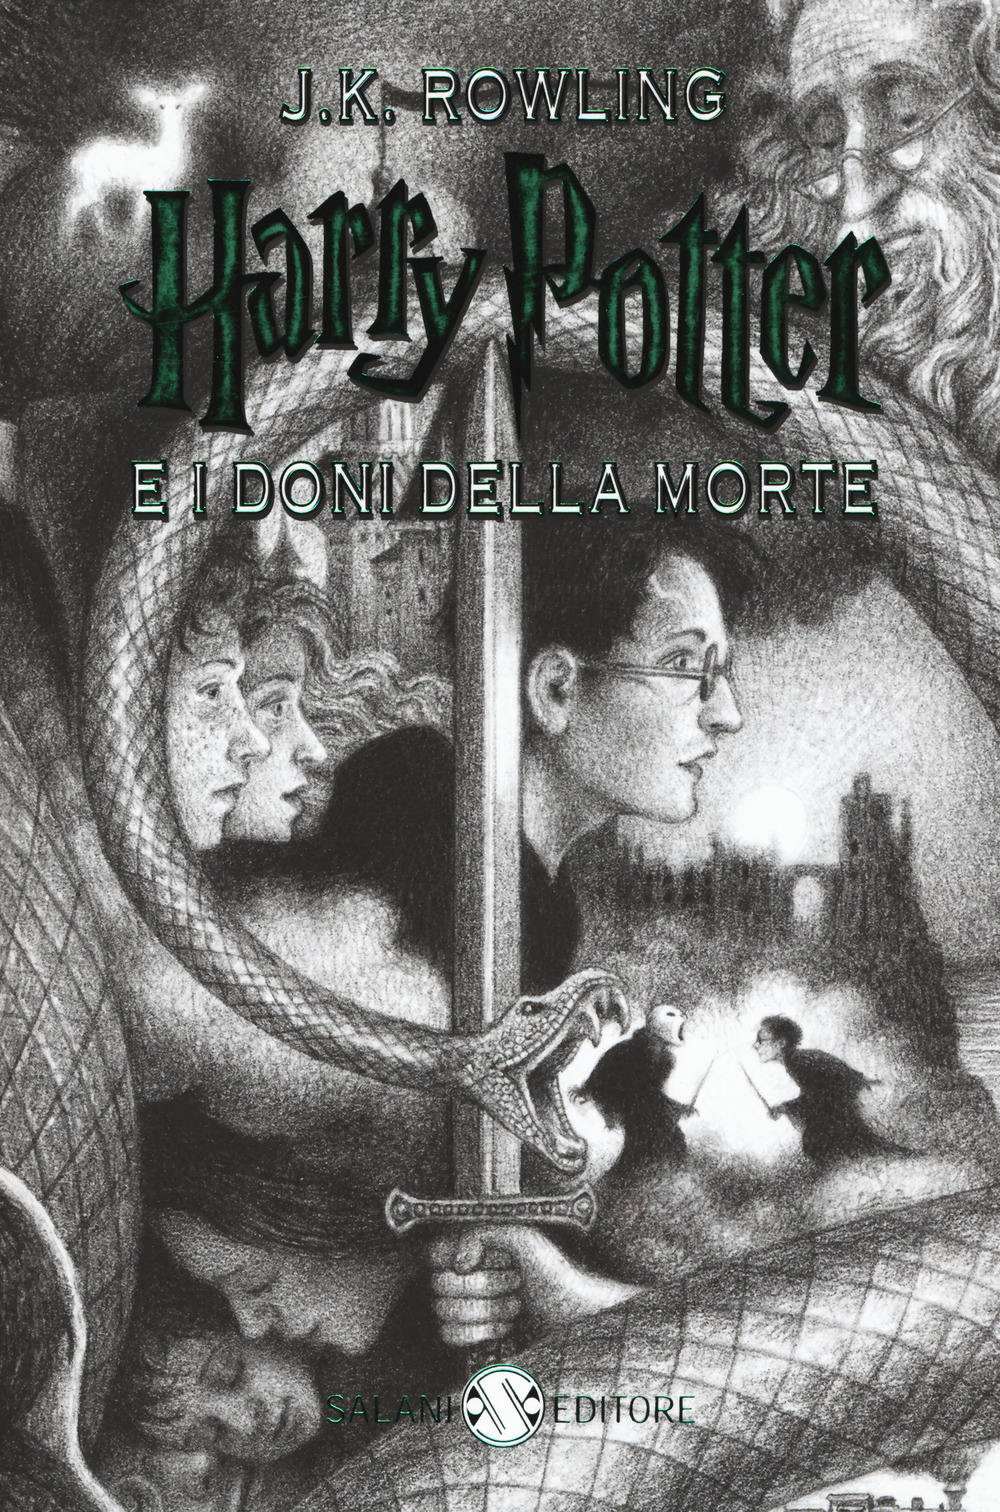 Harry Potter e i doni della morte. Nuova ediz.. Vol. 7